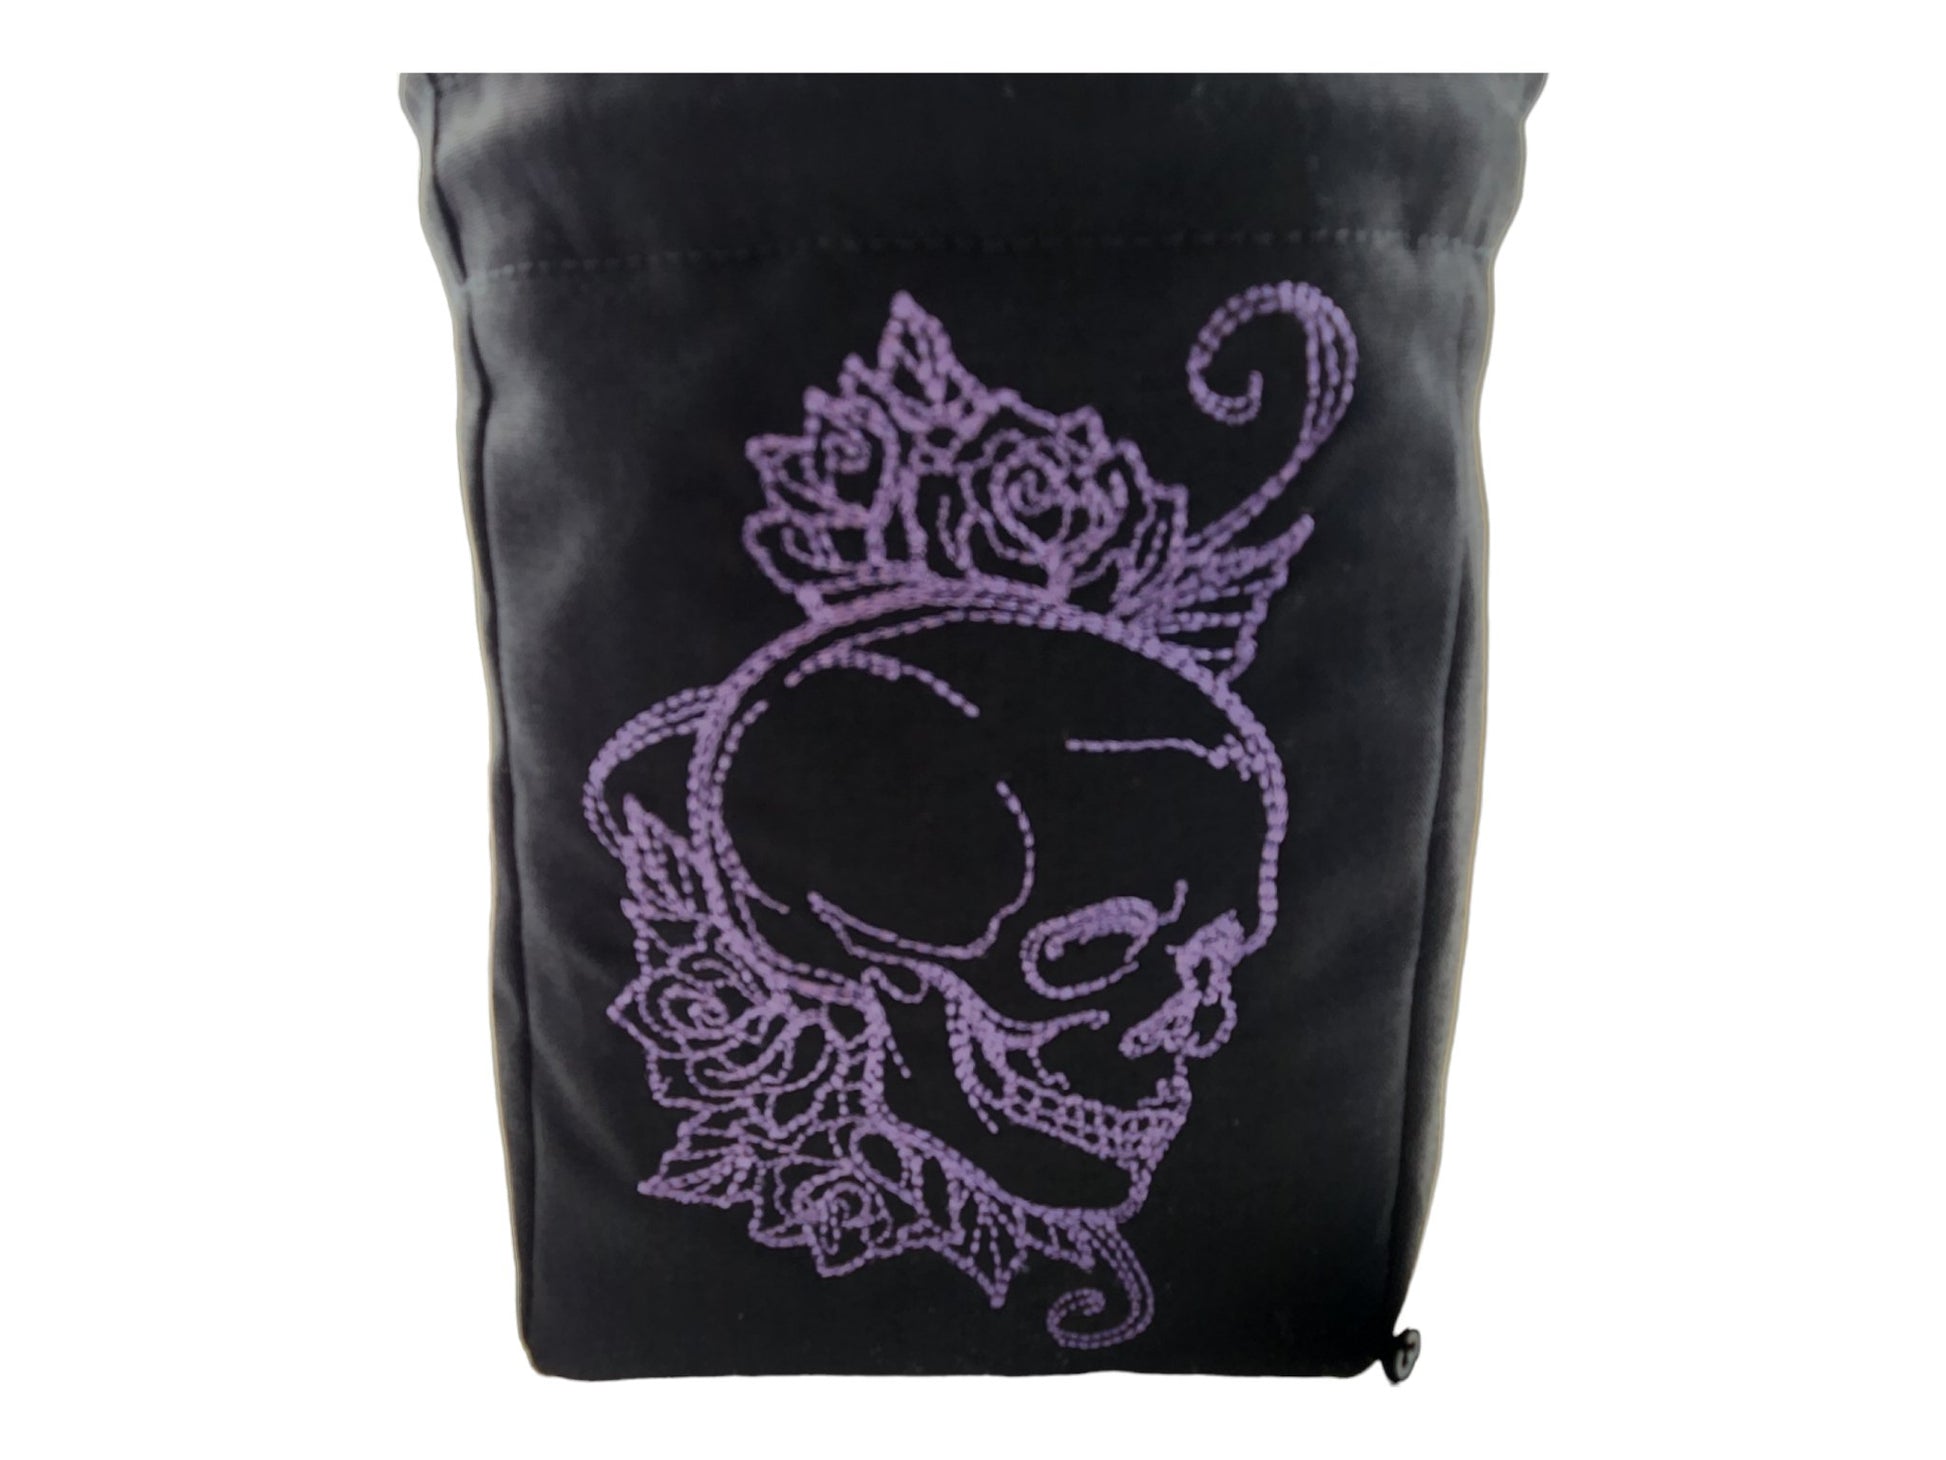 Skull and Rose dice bag - Rowan Gate